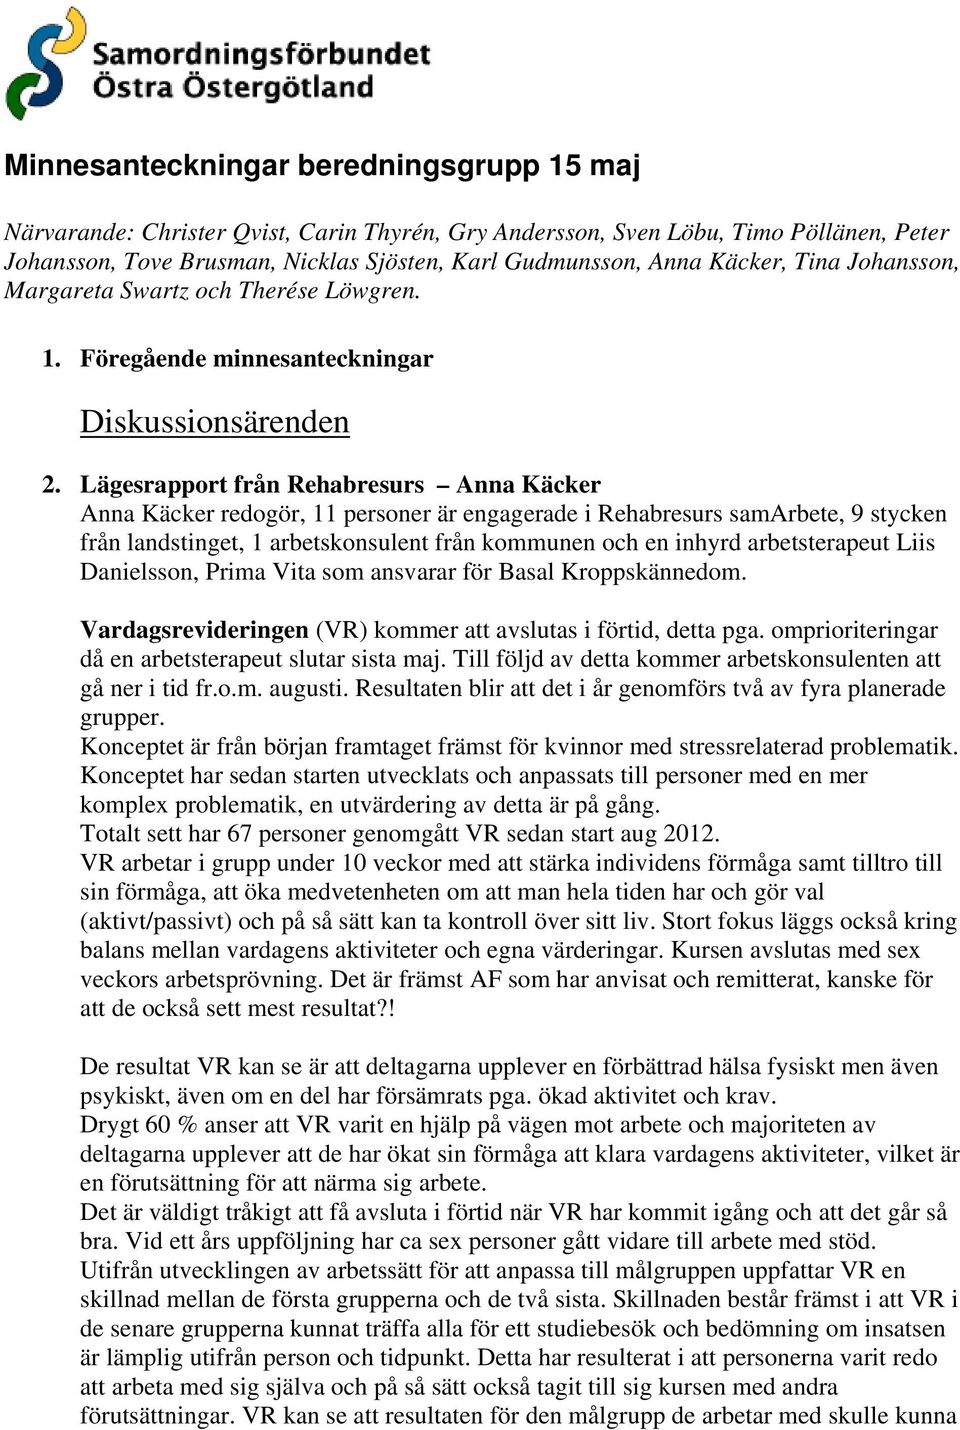 Lägesrapport från Rehabresurs Anna Käcker Anna Käcker redogör, 11 personer är engagerade i Rehabresurs samarbete, 9 stycken från landstinget, 1 arbetskonsulent från kommunen och en inhyrd